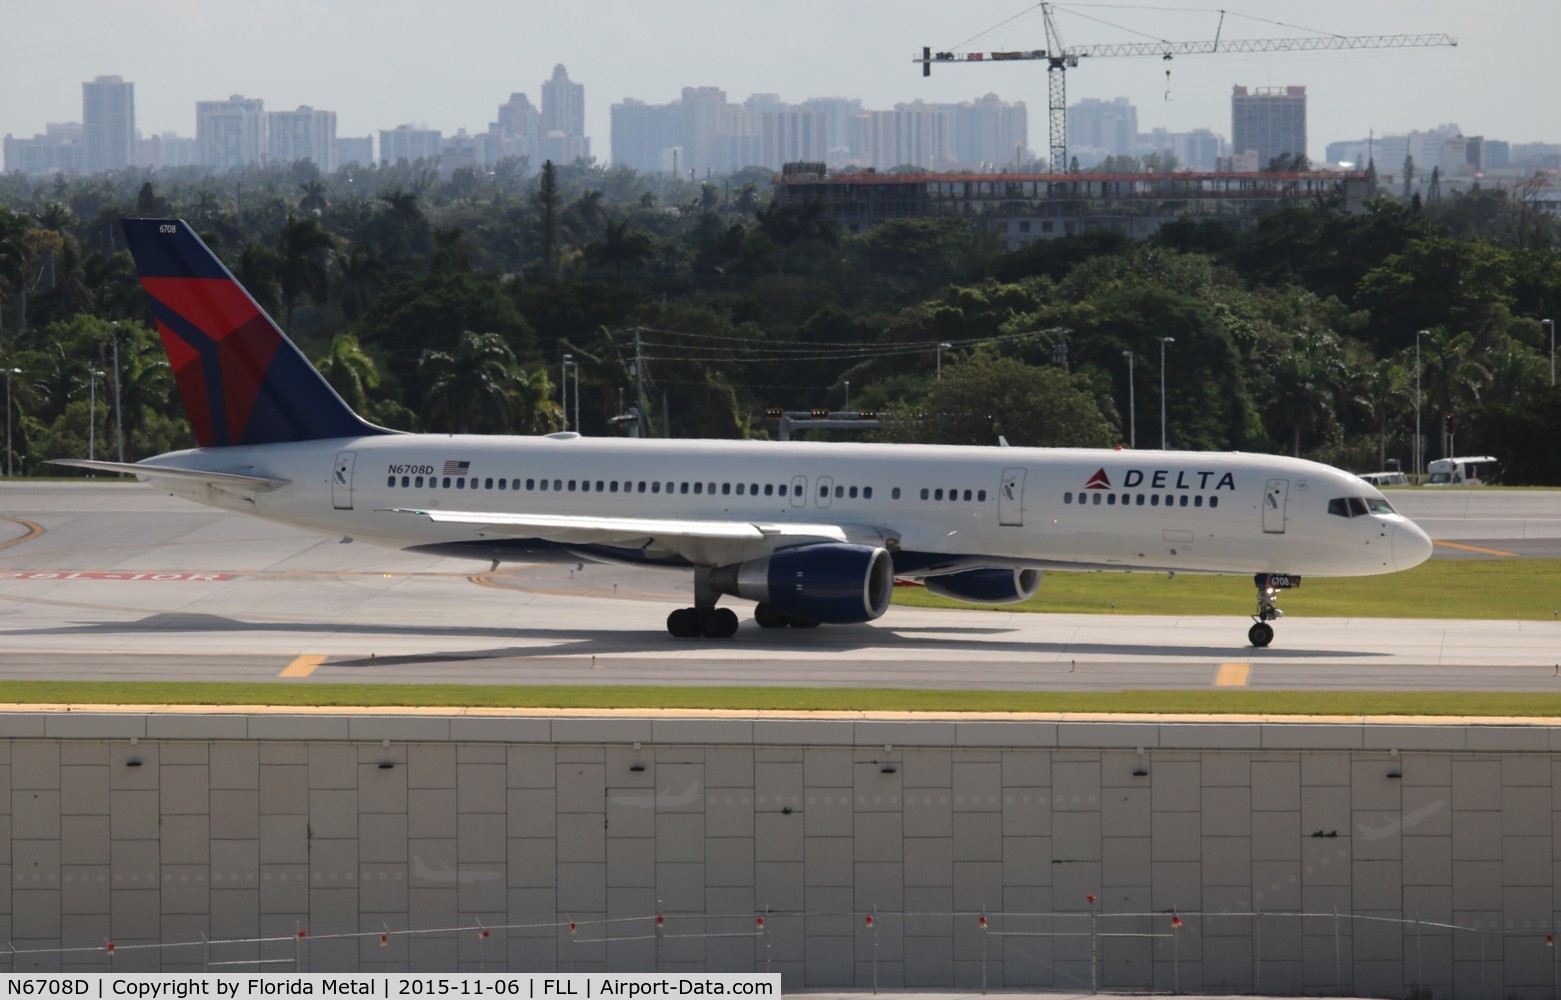 N6708D, 2000 Boeing 757-232 C/N 30480, Delta